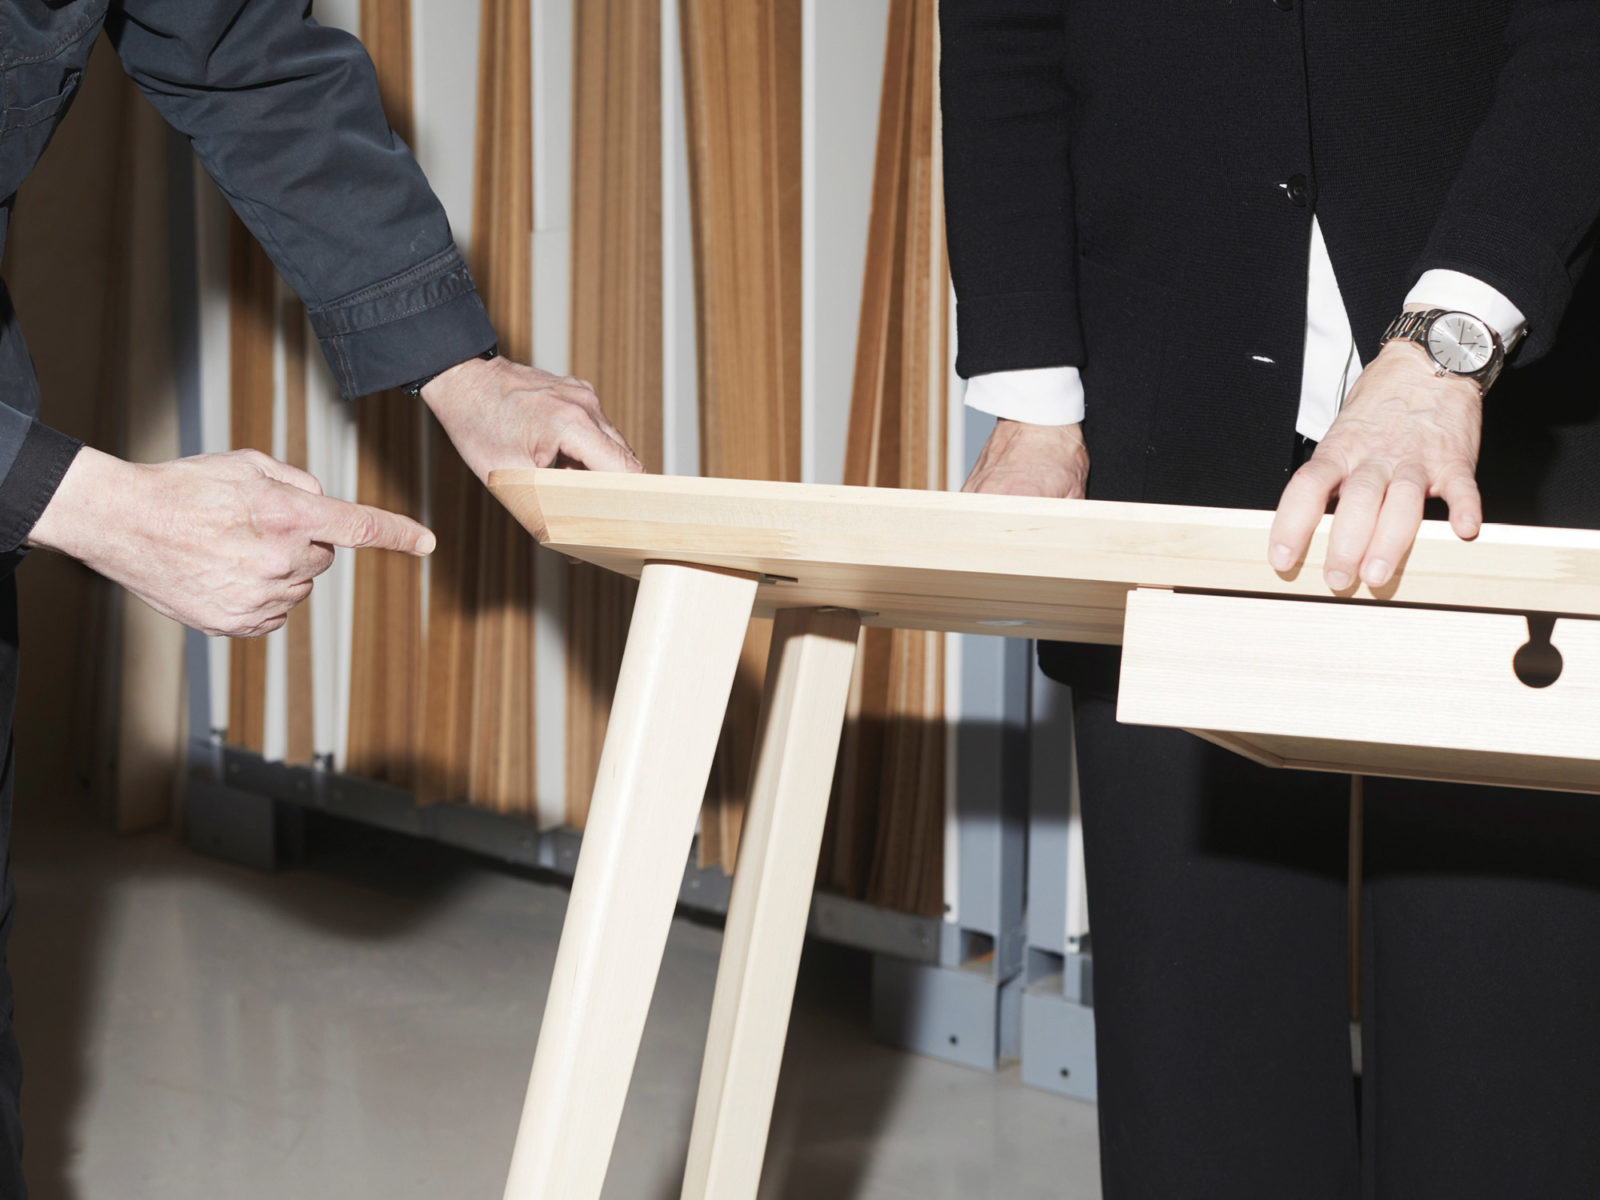 Närbild av två personer som håller ett bord, en pekar mot området där ett bordsben är fäst vid bordsskivan.